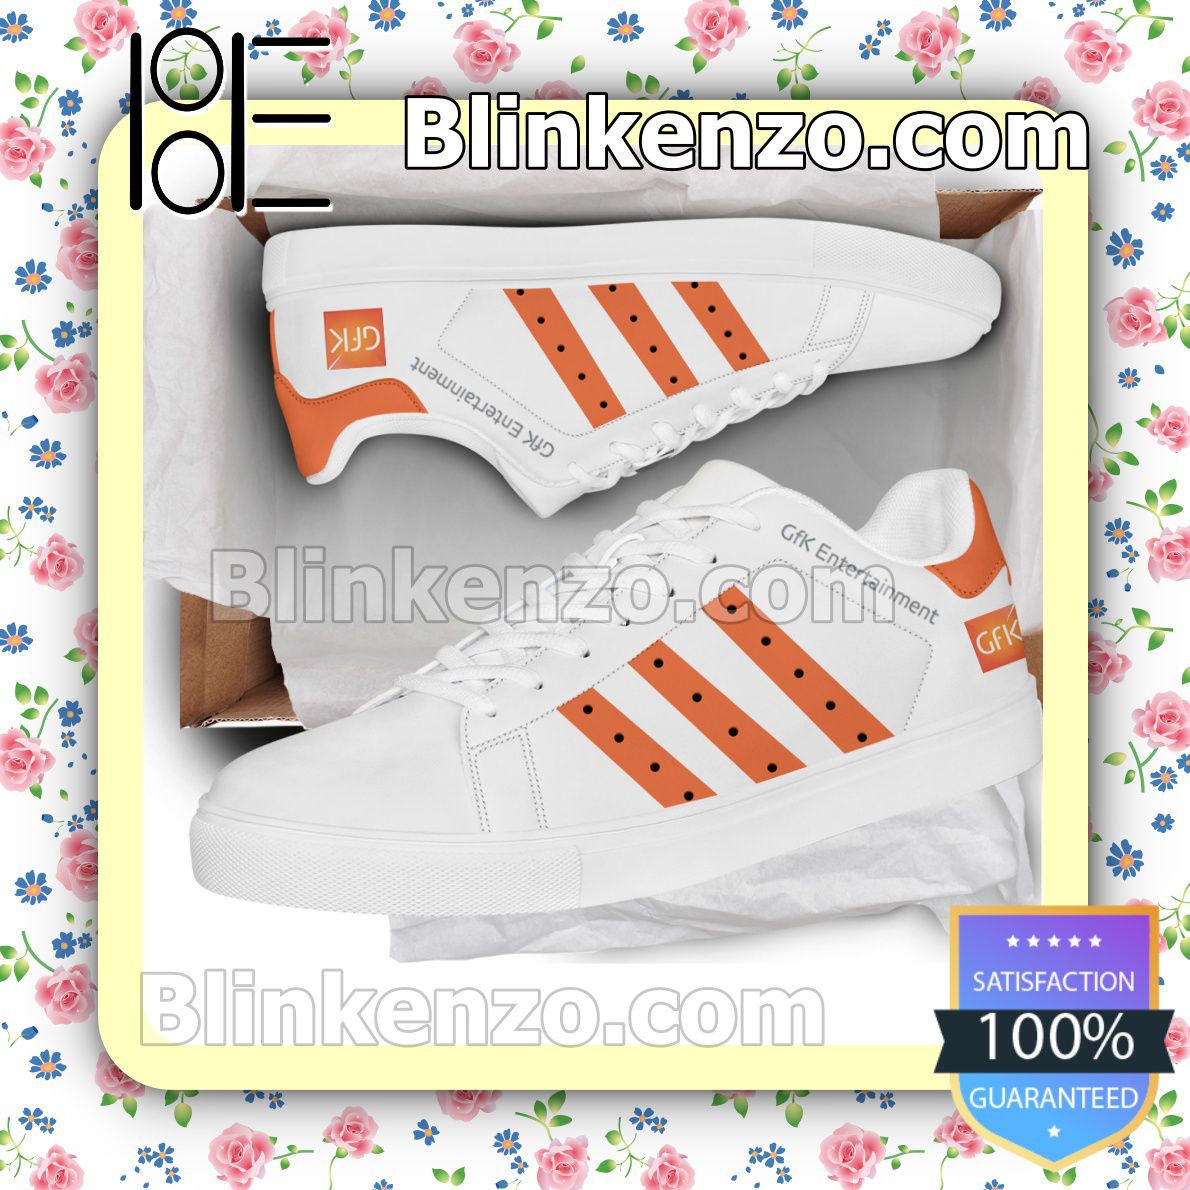 Misericordioso atleta Oriental GfK Entertainment Charts Logo Brand Adidas Low Top Shoes - Blinkenzo